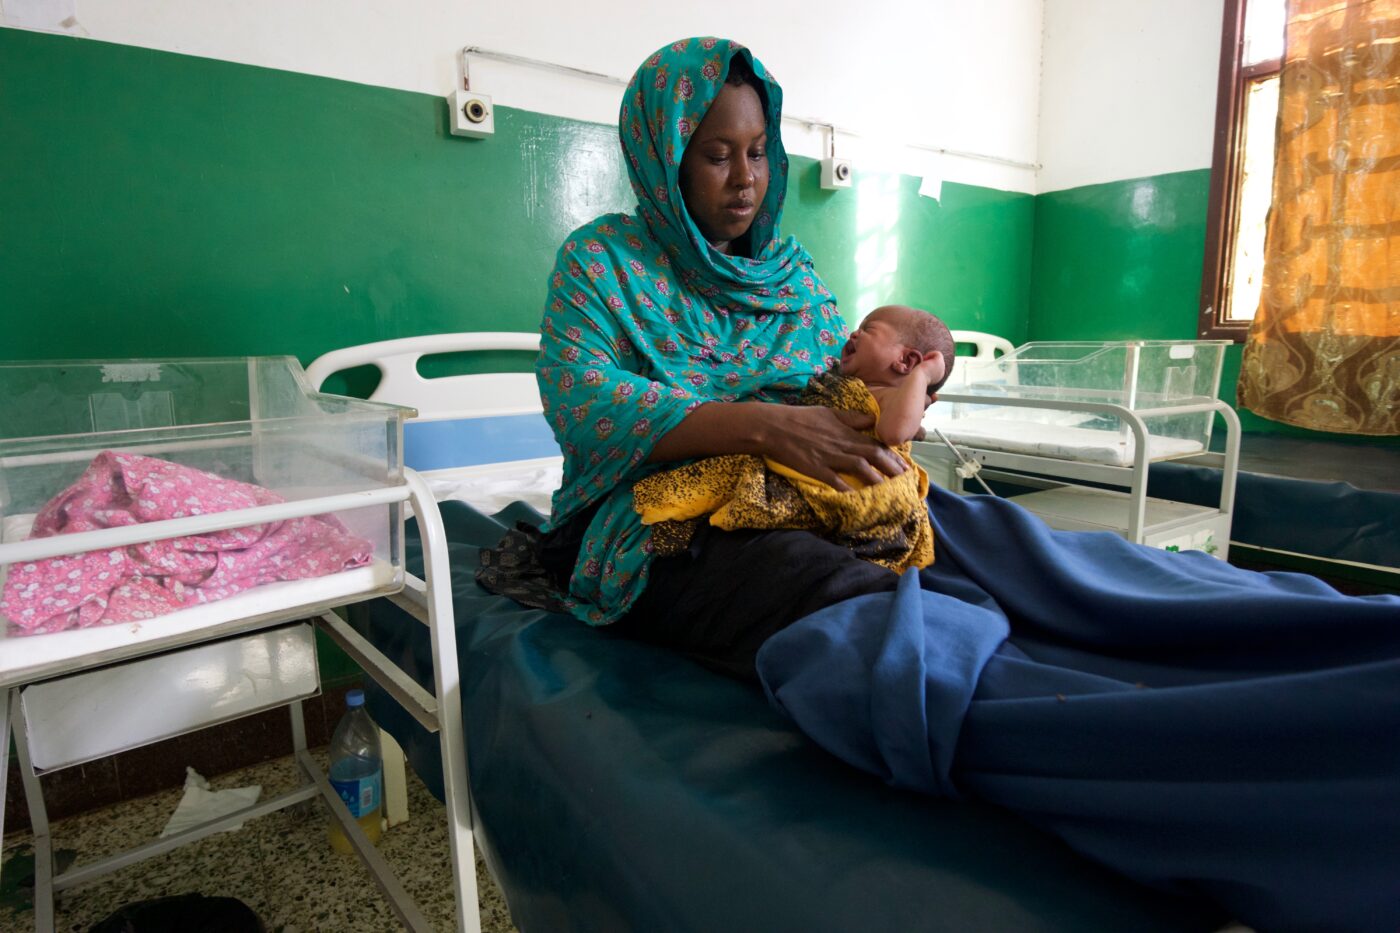 Huivipäinen nainen istuu sairaalasängyllä pidellen vauvaa.